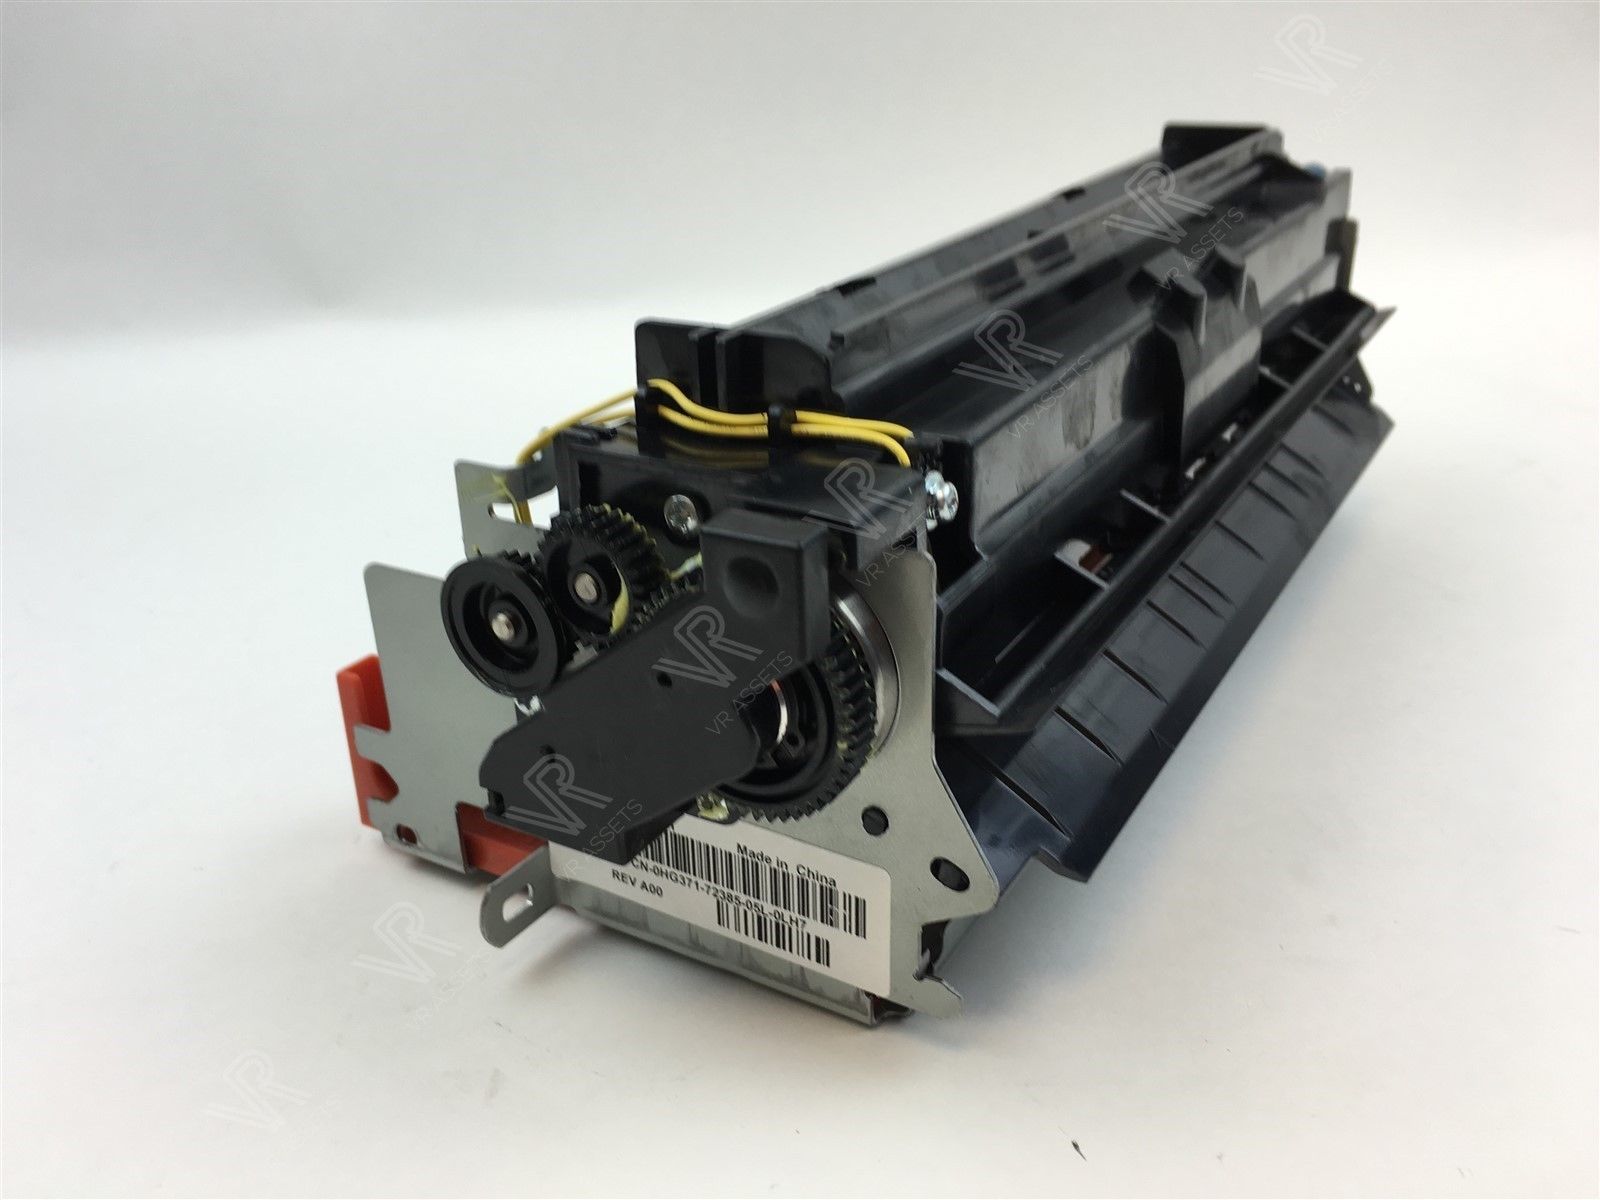 Genuine Dell 5210 Laser Printer Fuser maintenance Kit 220V HG371 0HG371